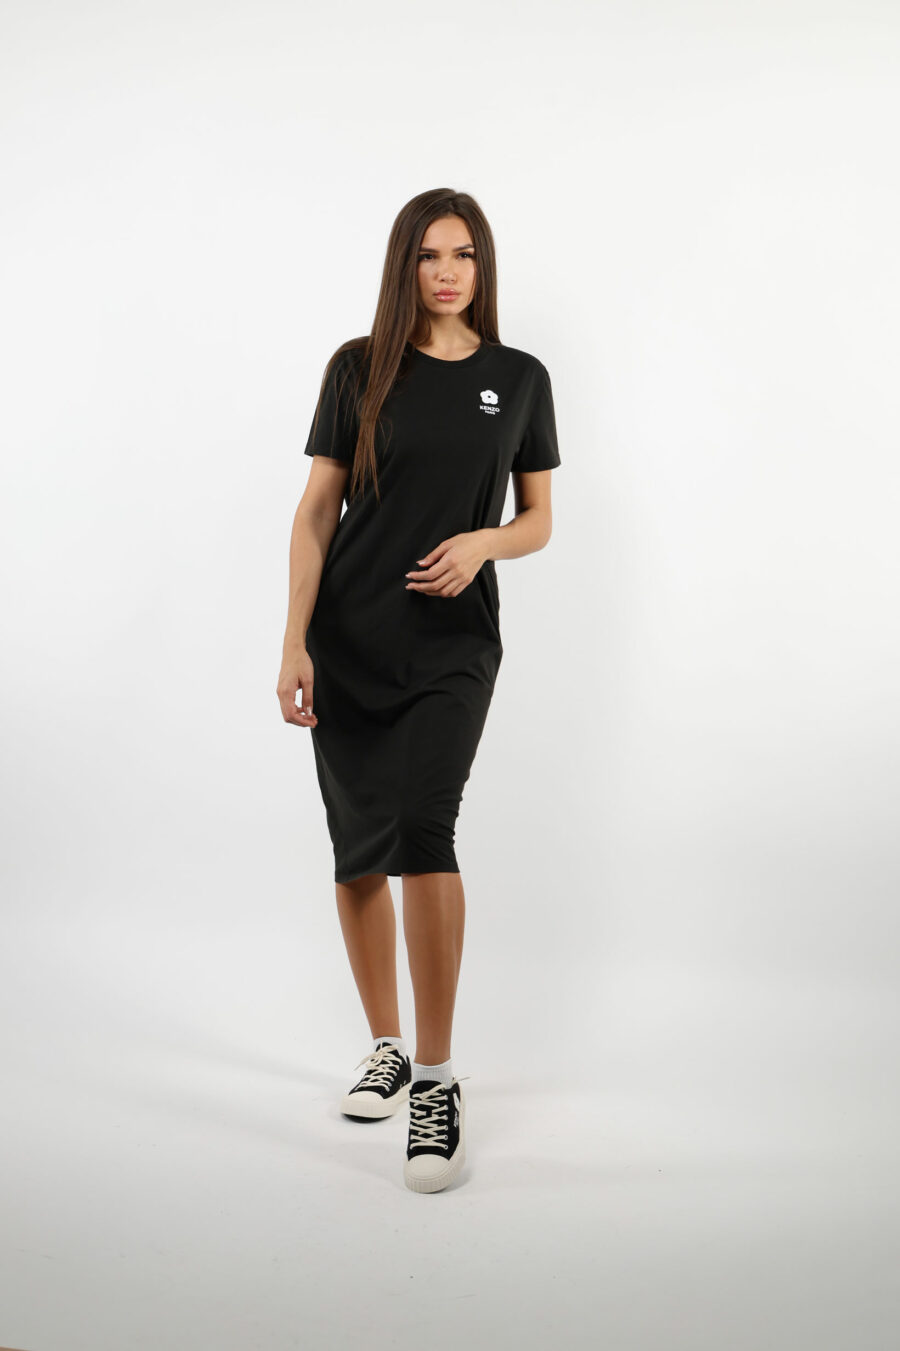 Long black polo style dress with white "boke flower" mini logo - 109524